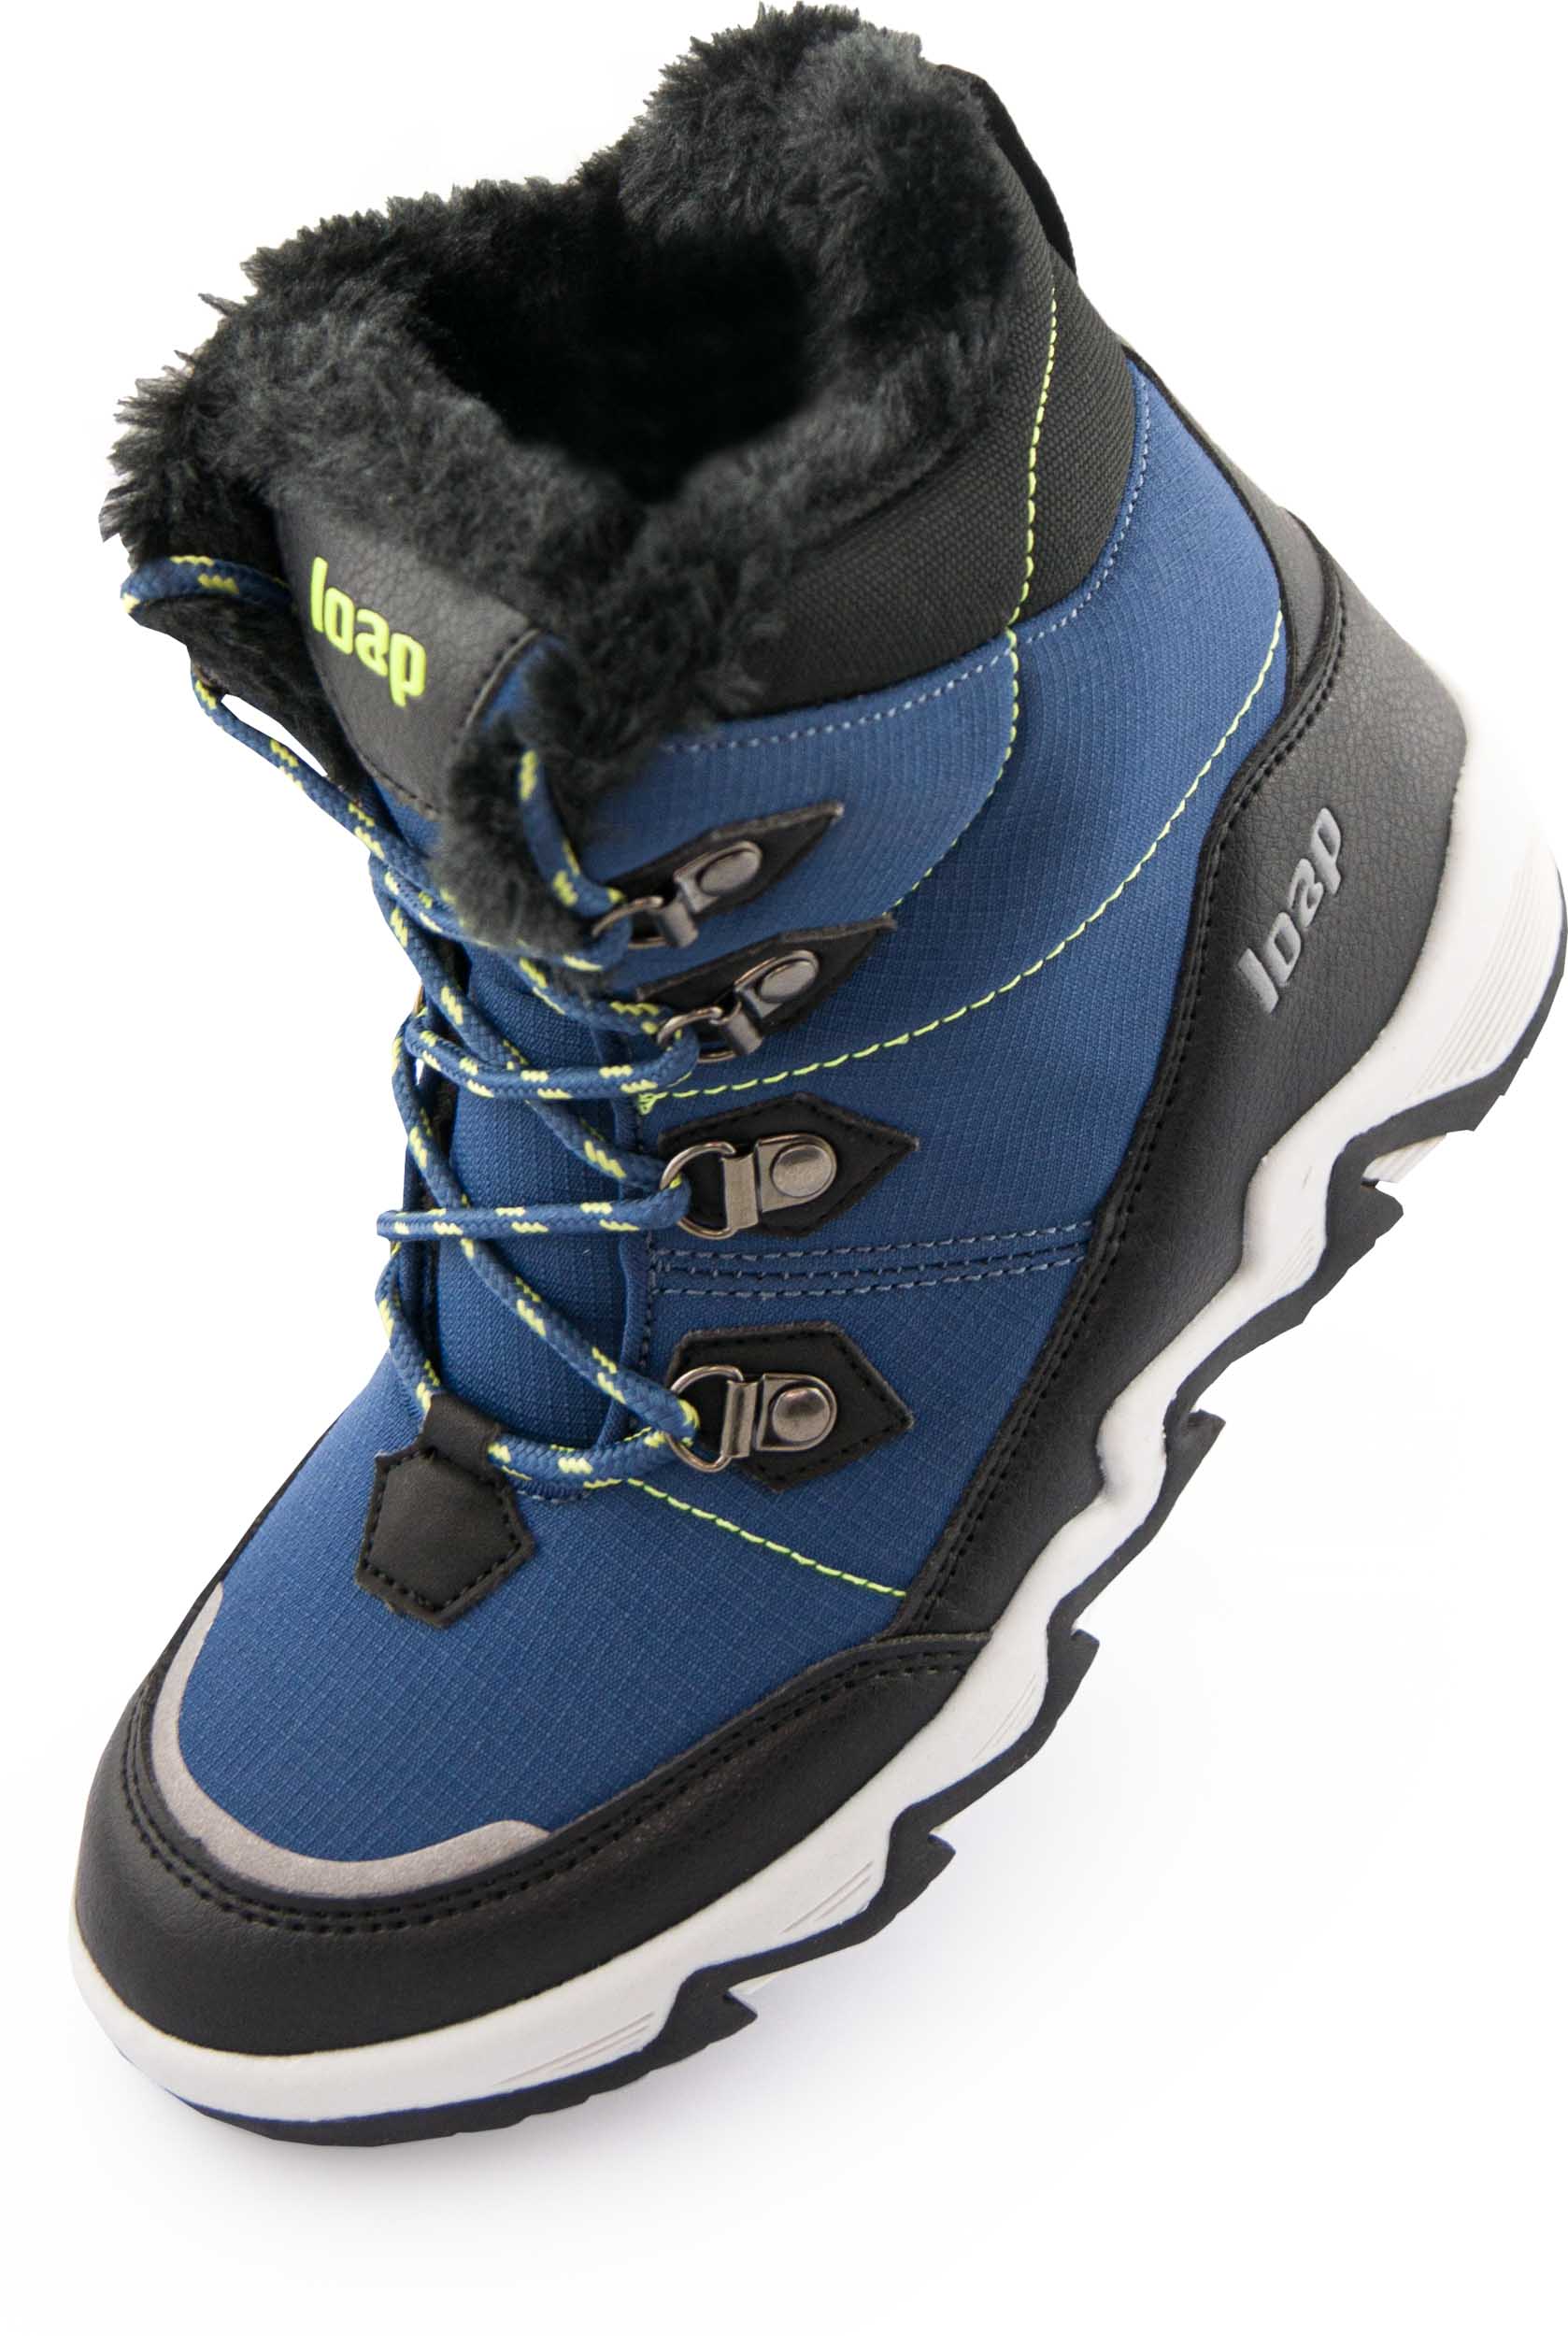 Dětské zimní boty LOAP LIMA blue|33